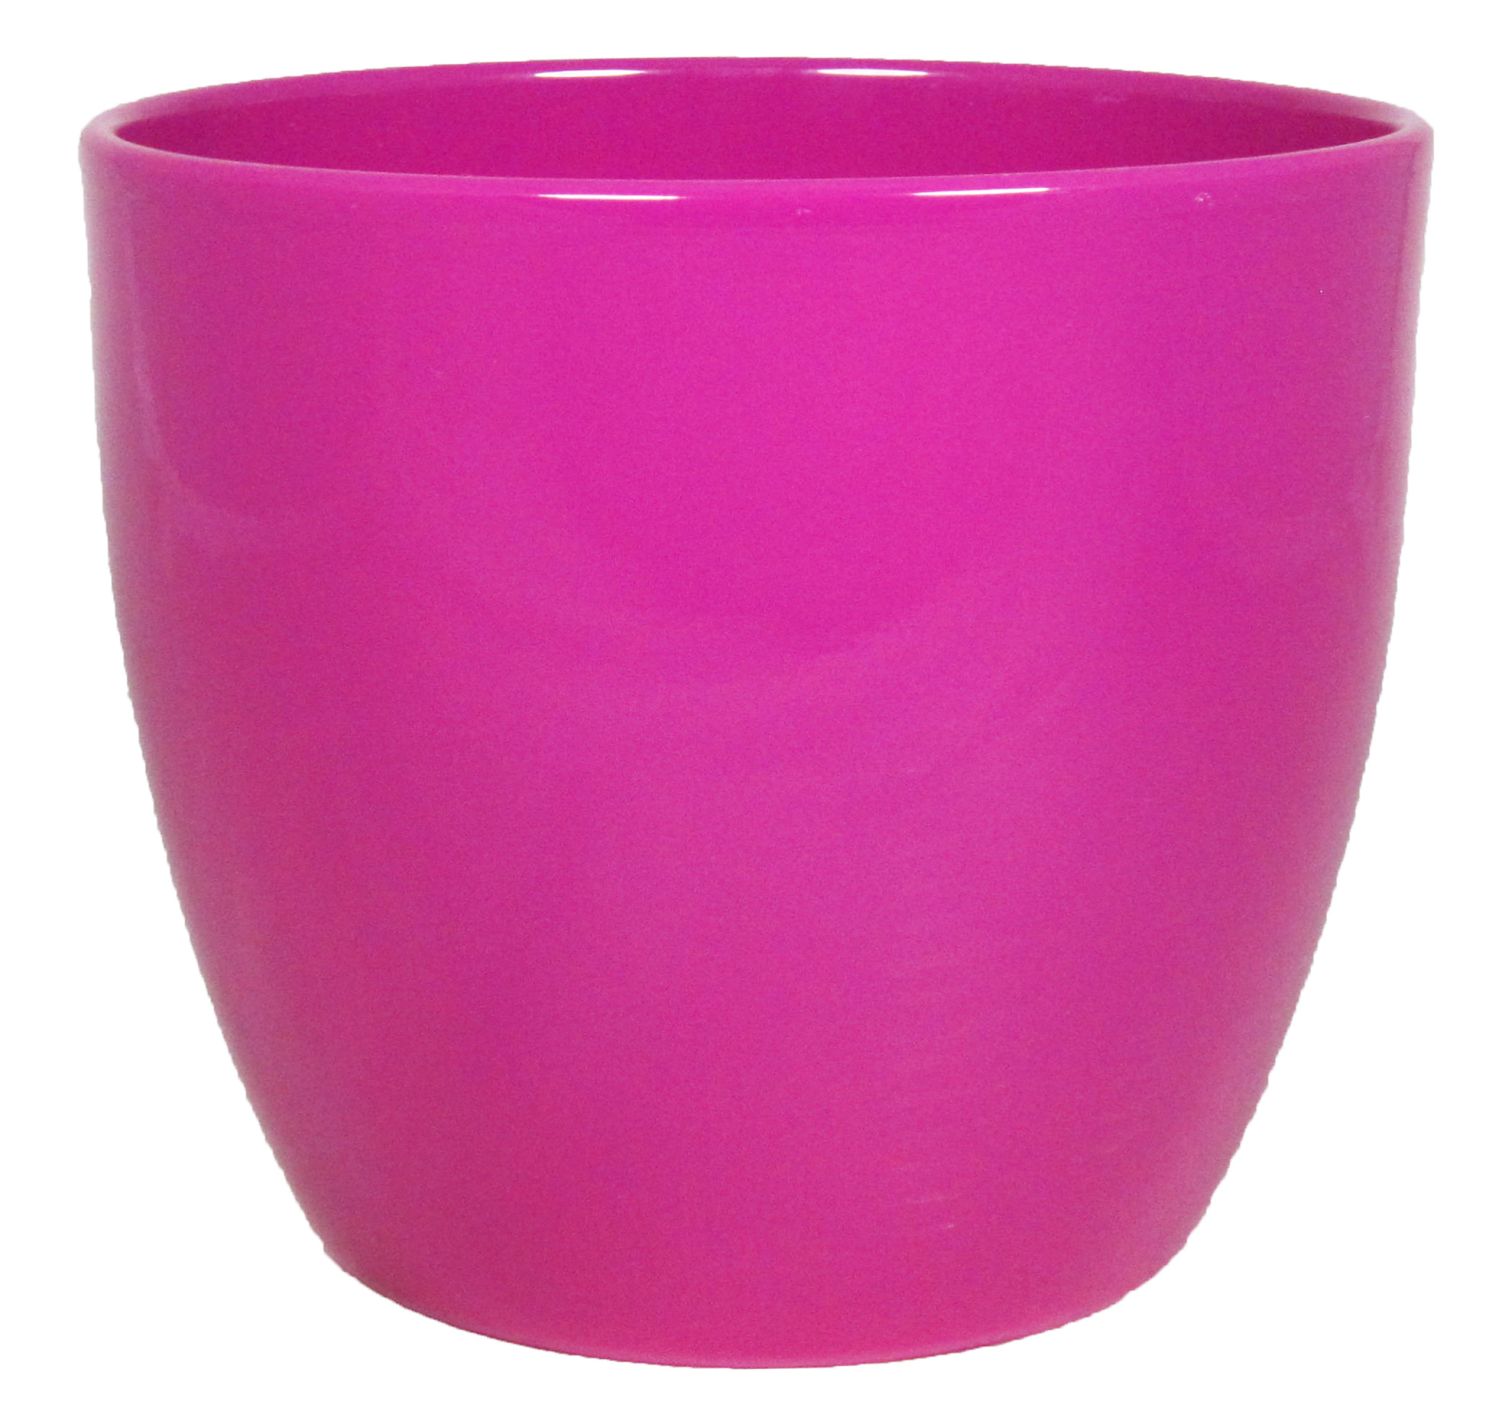 Übertopf TEHERAN BASAR, Keramik, pink, 22,5cm, Ø25cm